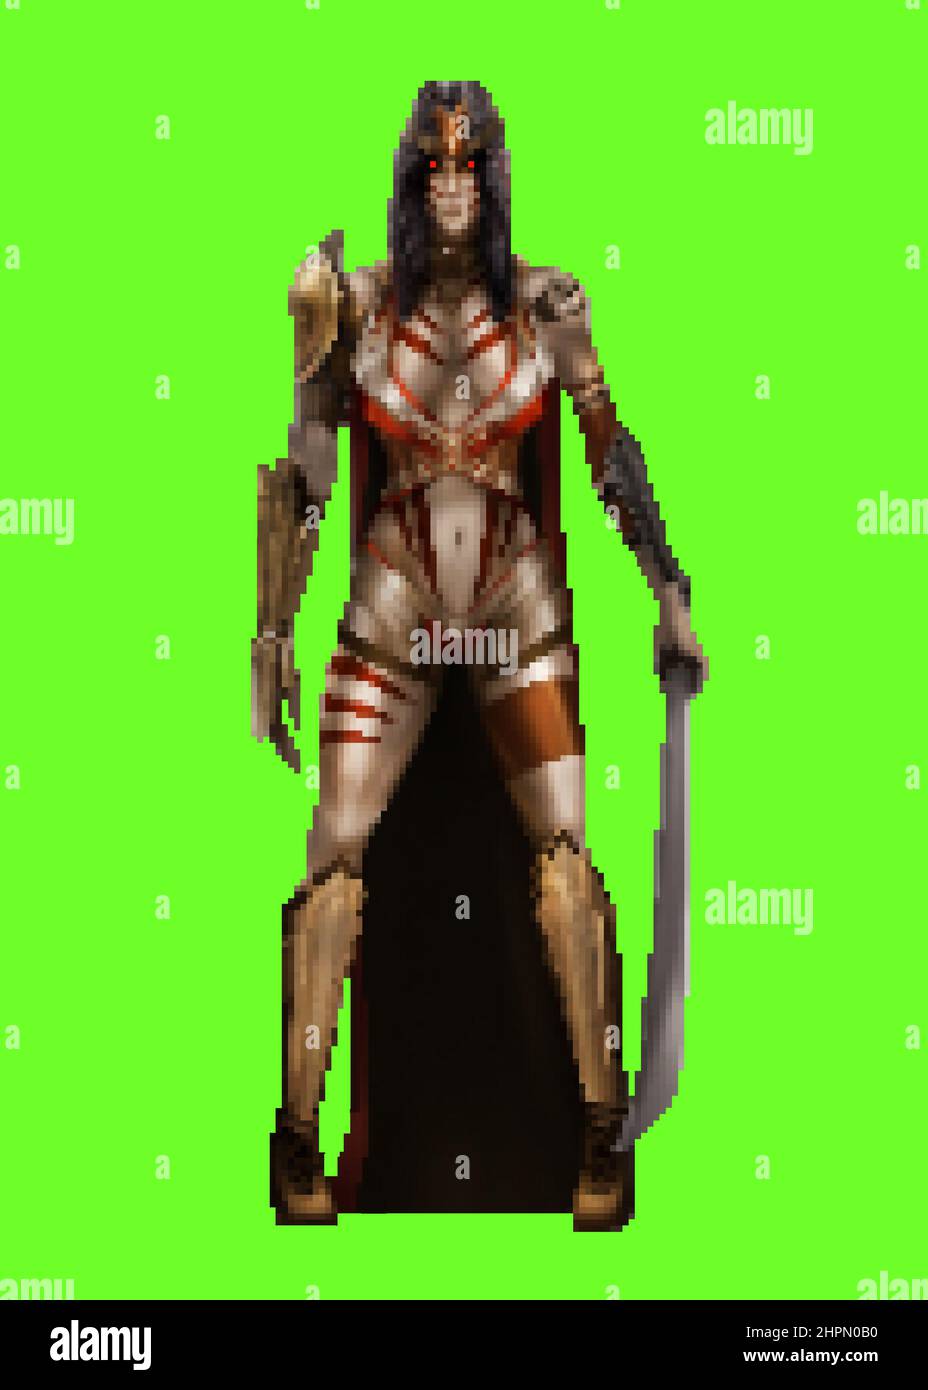 Pixel Artwork Illustration der Fantasie amazon weibliche Krieger Charakter  in Rüstung Anzug und Schwert auf grünem Bildschirm Hintergrund  Stockfotografie - Alamy